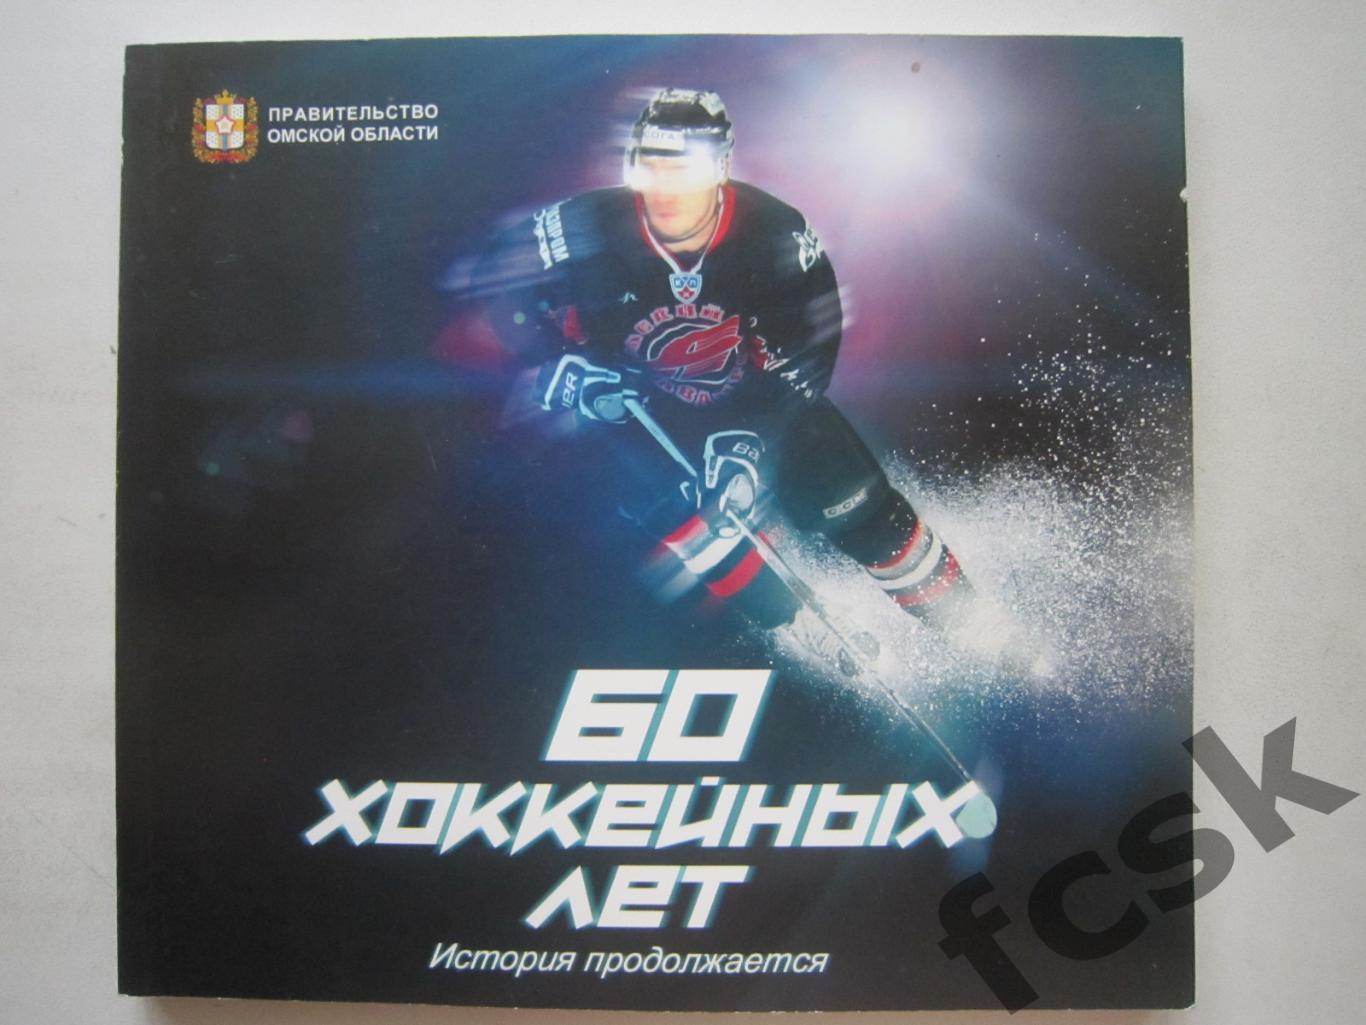 Авангард Омск 60 хоккейных лет История продолжается (ФГ-2)